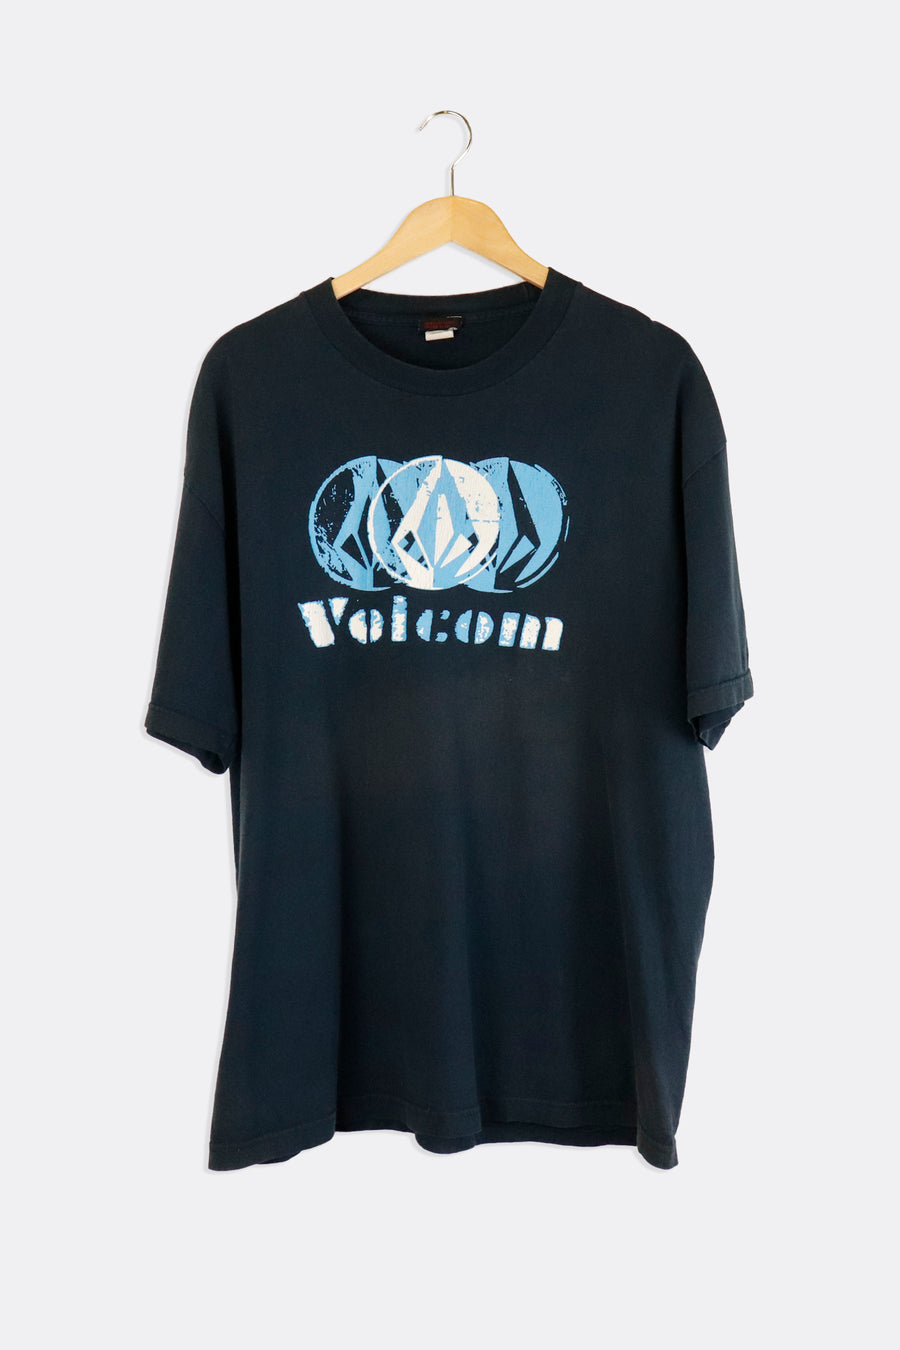 Vintage Volcom Blue Vinyl Logo T Shirt Sz XL